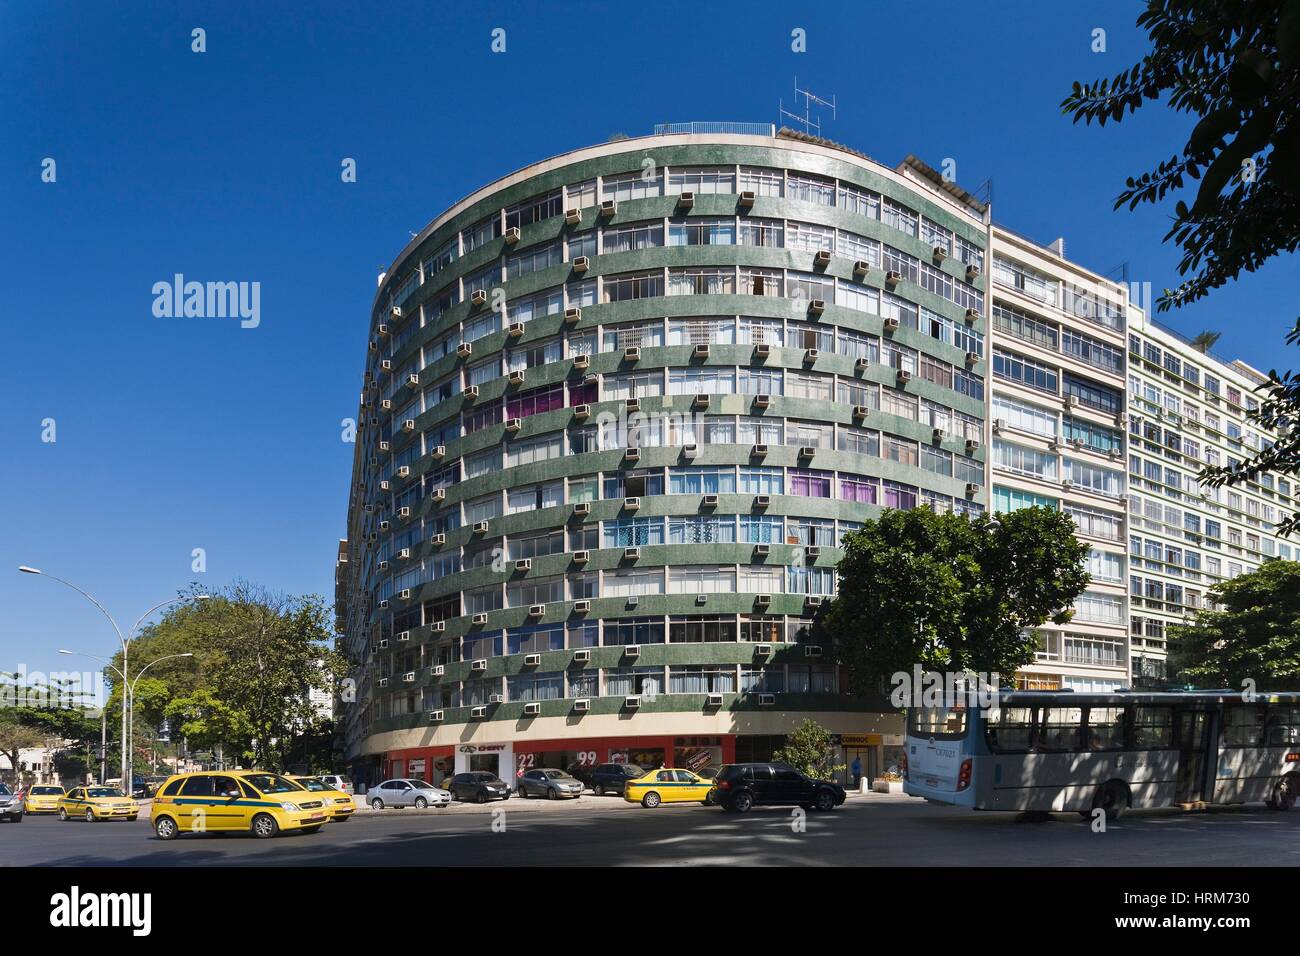 Brazil, Rio de Janeiro. Botafogo, building on Avenida (street) Pasteur Stock Photo